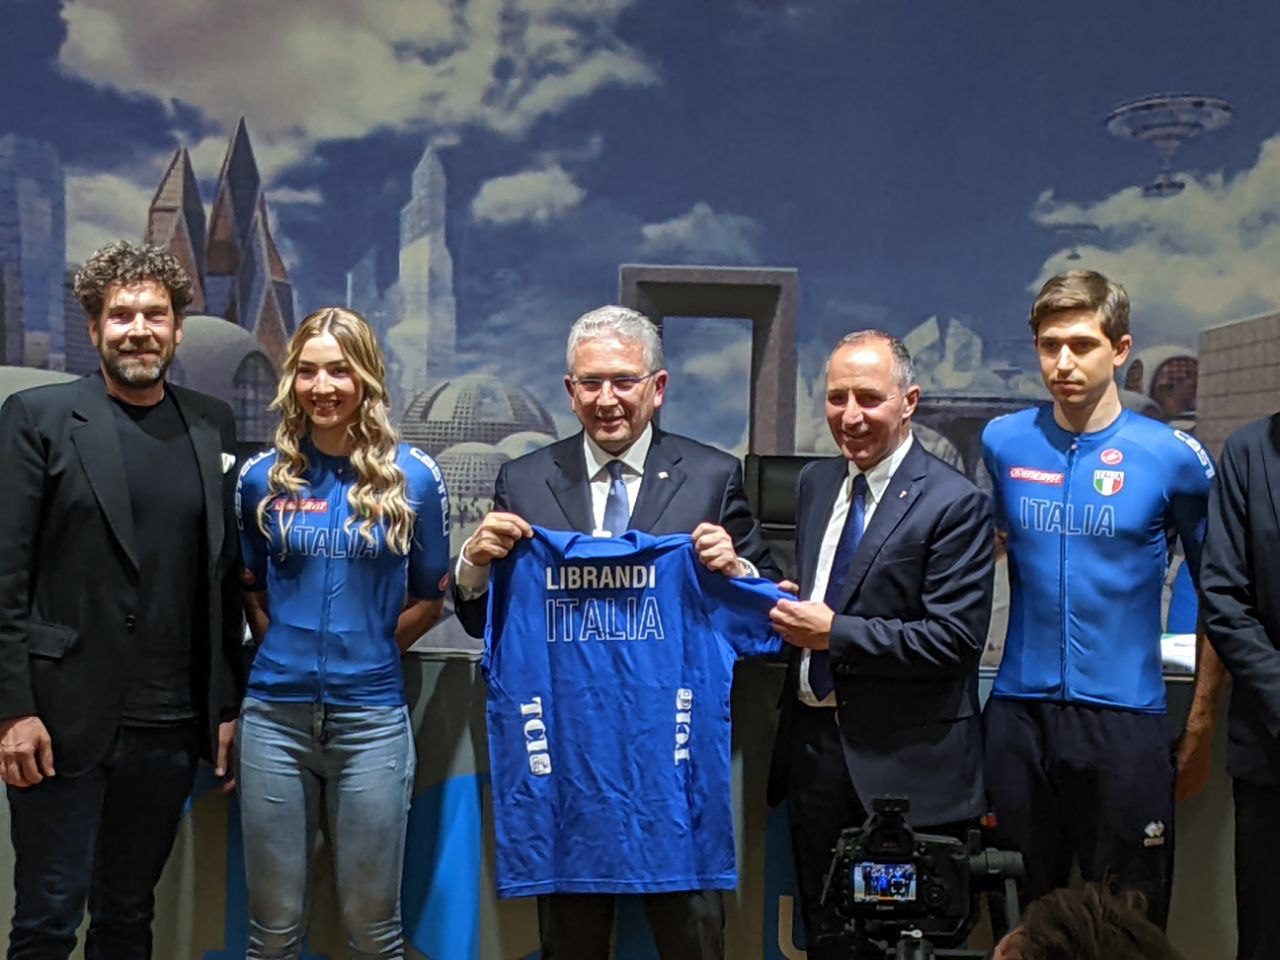 Saronno, Tci sponsor delle nazionali italiane di ciclismo: tutto quello che c’è da sapere